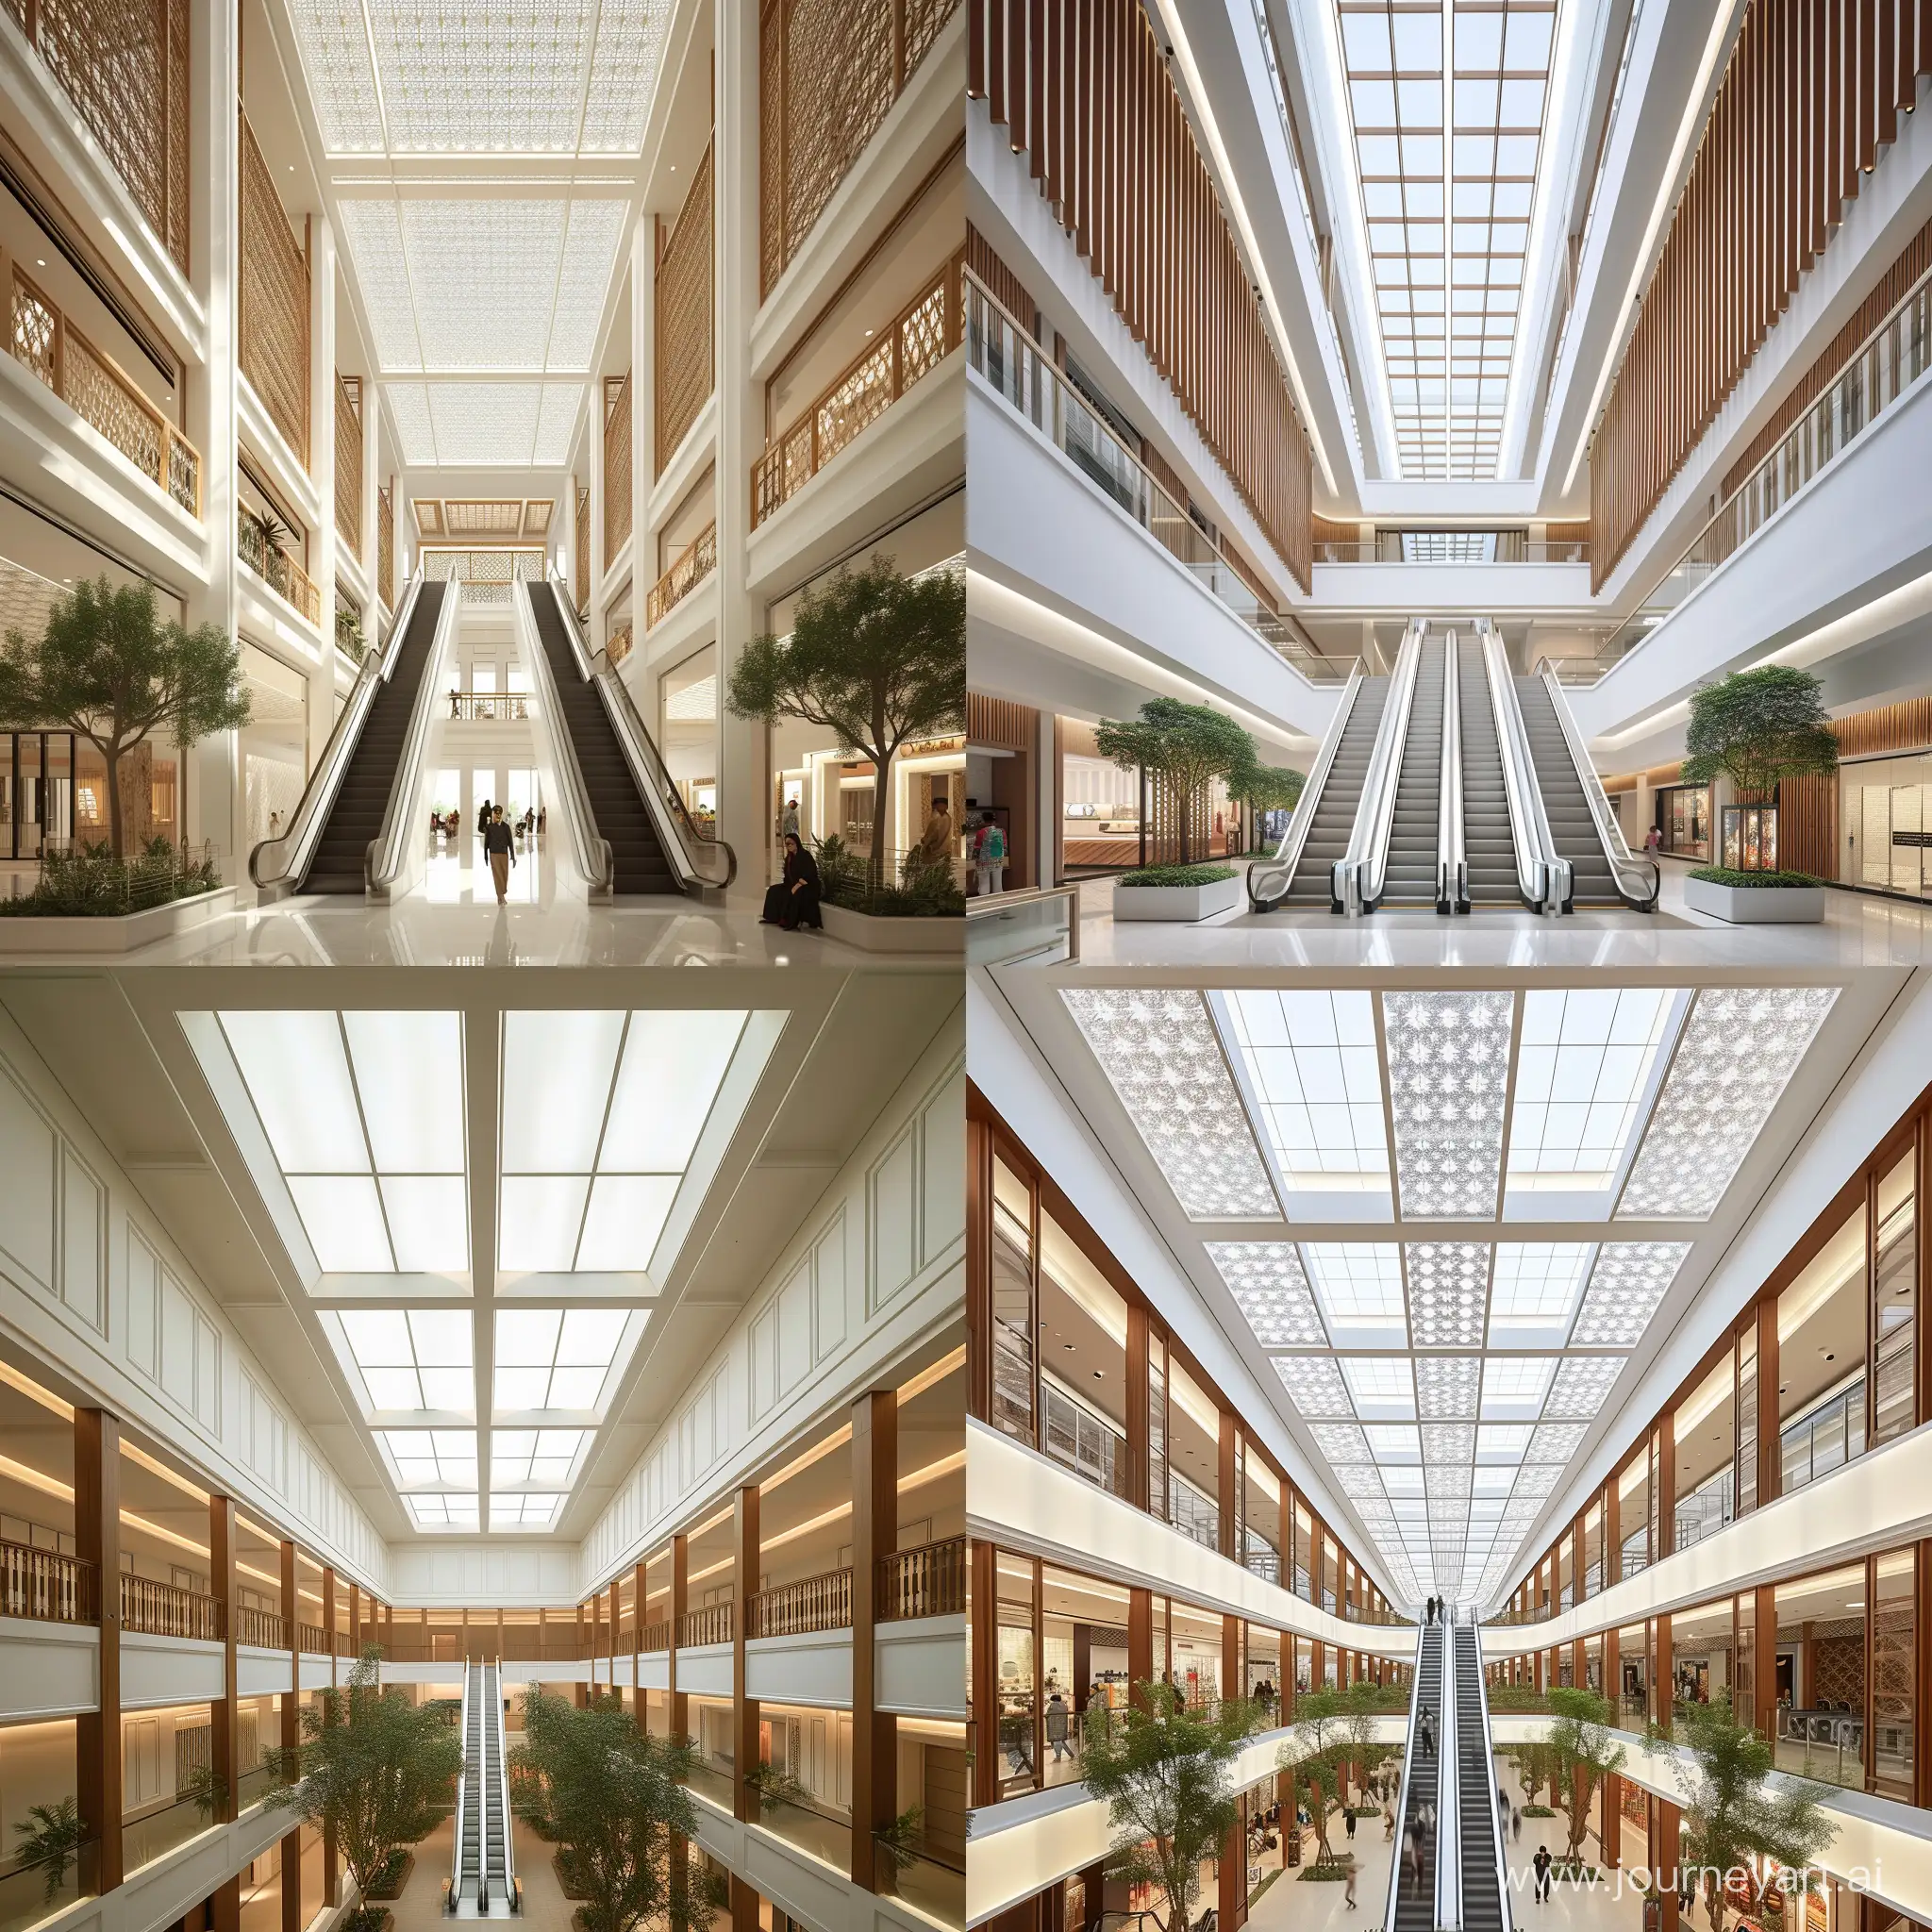 Un Atrium à DJAKARTA de 3 étages ,
 12 mètres de haut , 
7 mètres de large , 
Le plafond écran de lumière blanc rectangle  est filtré de clostra en bois , 8 voutes  pure blanche  simple au dessus des Escalators , 
au pieds 2 arbres exotiques 